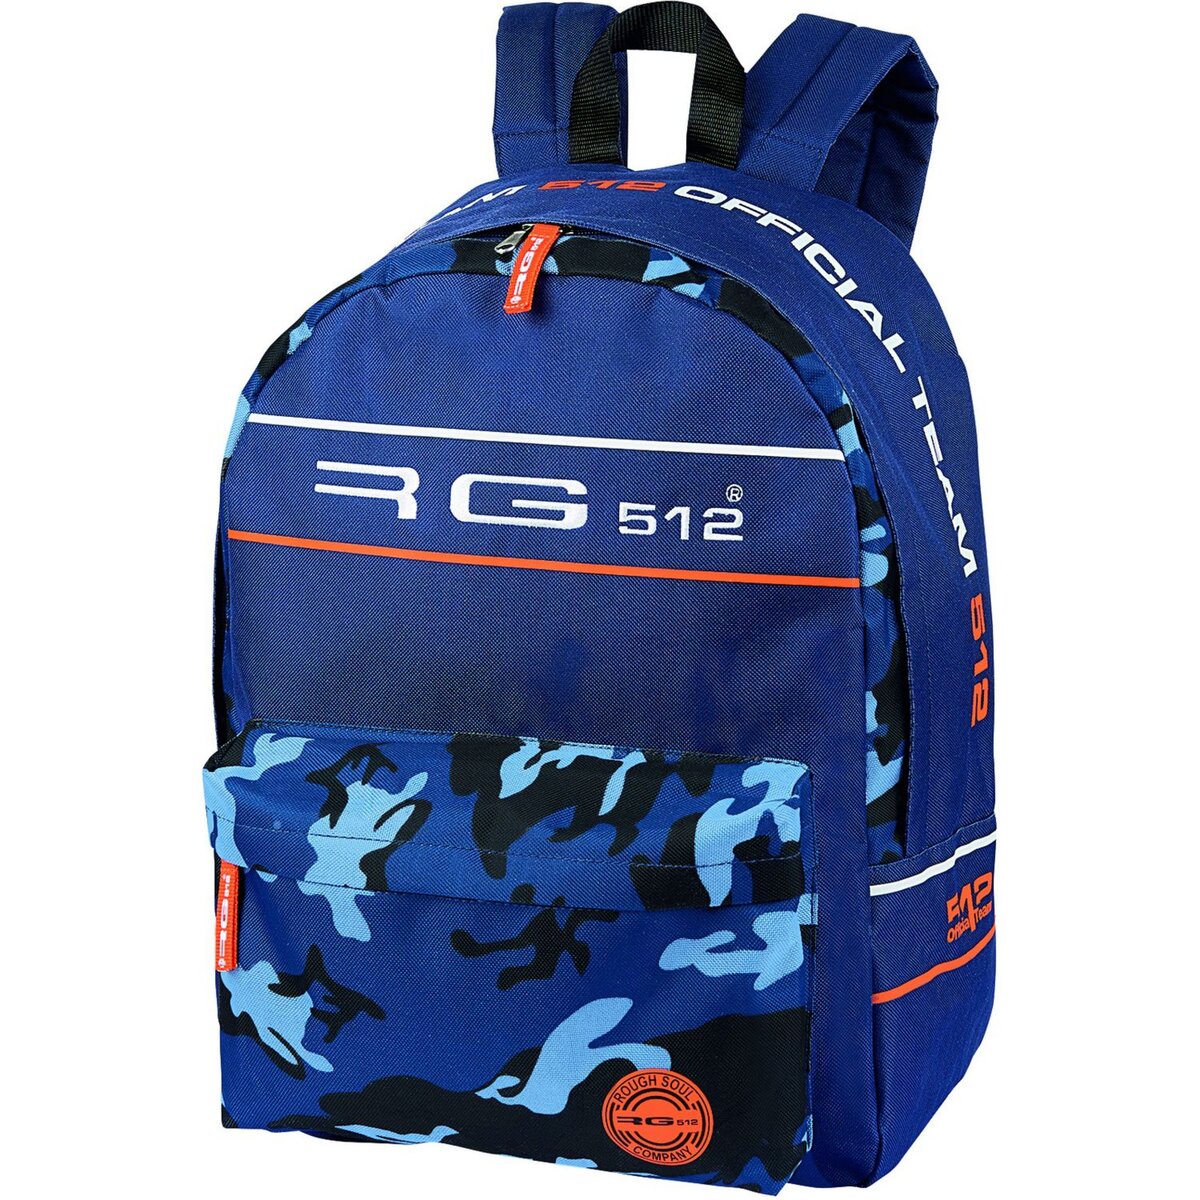 RG512 Sac à dos 1 compartiment bleu Camouflage RG512